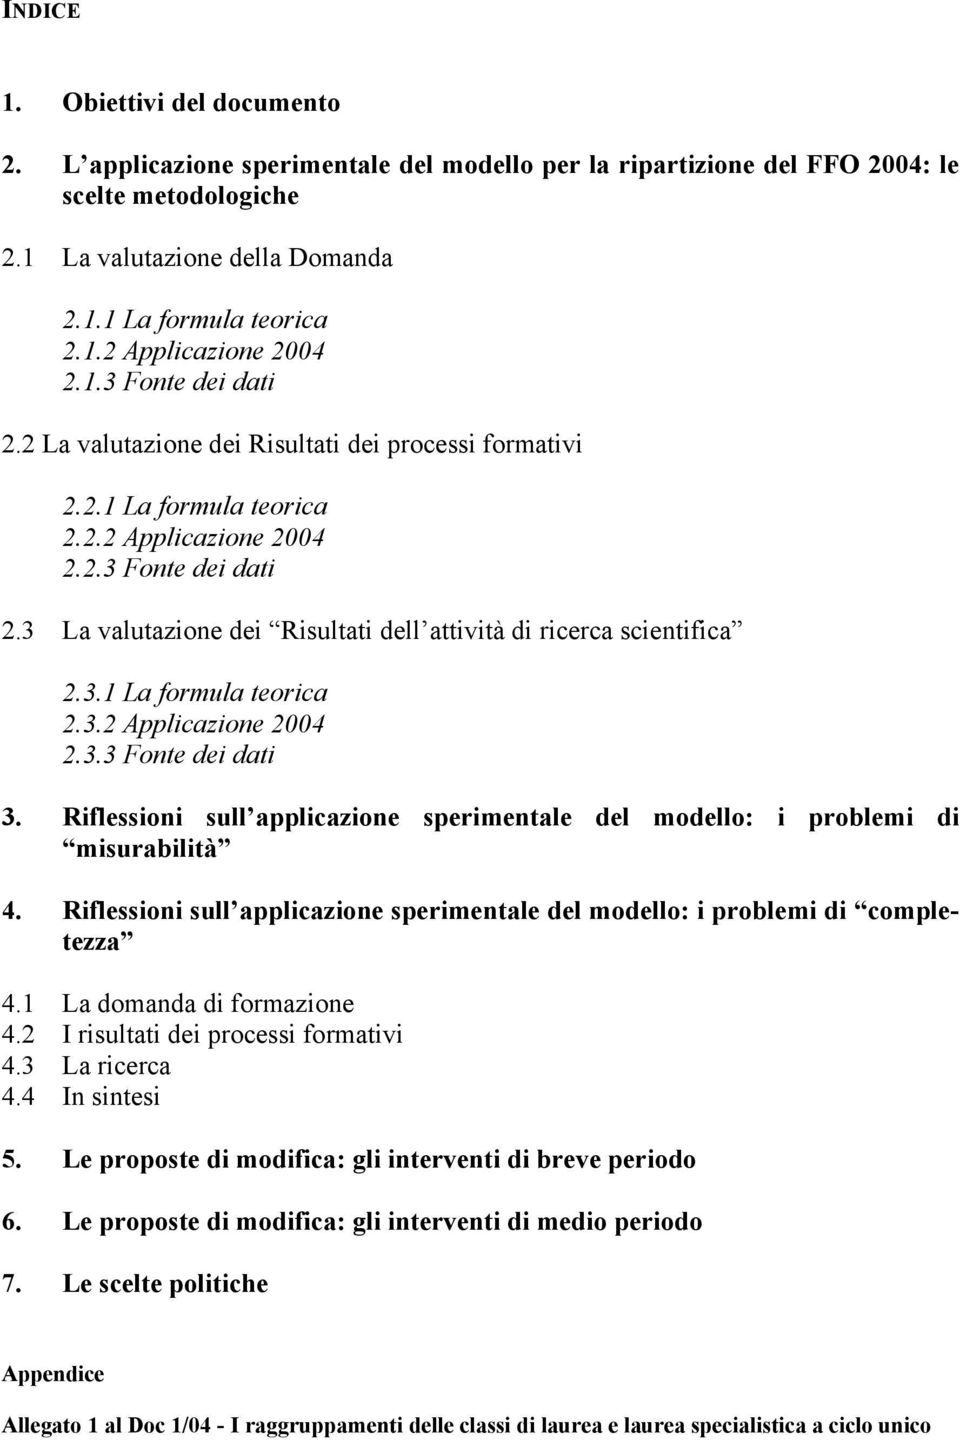 3.1 La formula teorica 2.3.2 Applicazione 2004 2.3.3 Fonte dei dati 3. Riflessioni sull applicazione sperimentale del modello: i problemi di misurabilità 4.